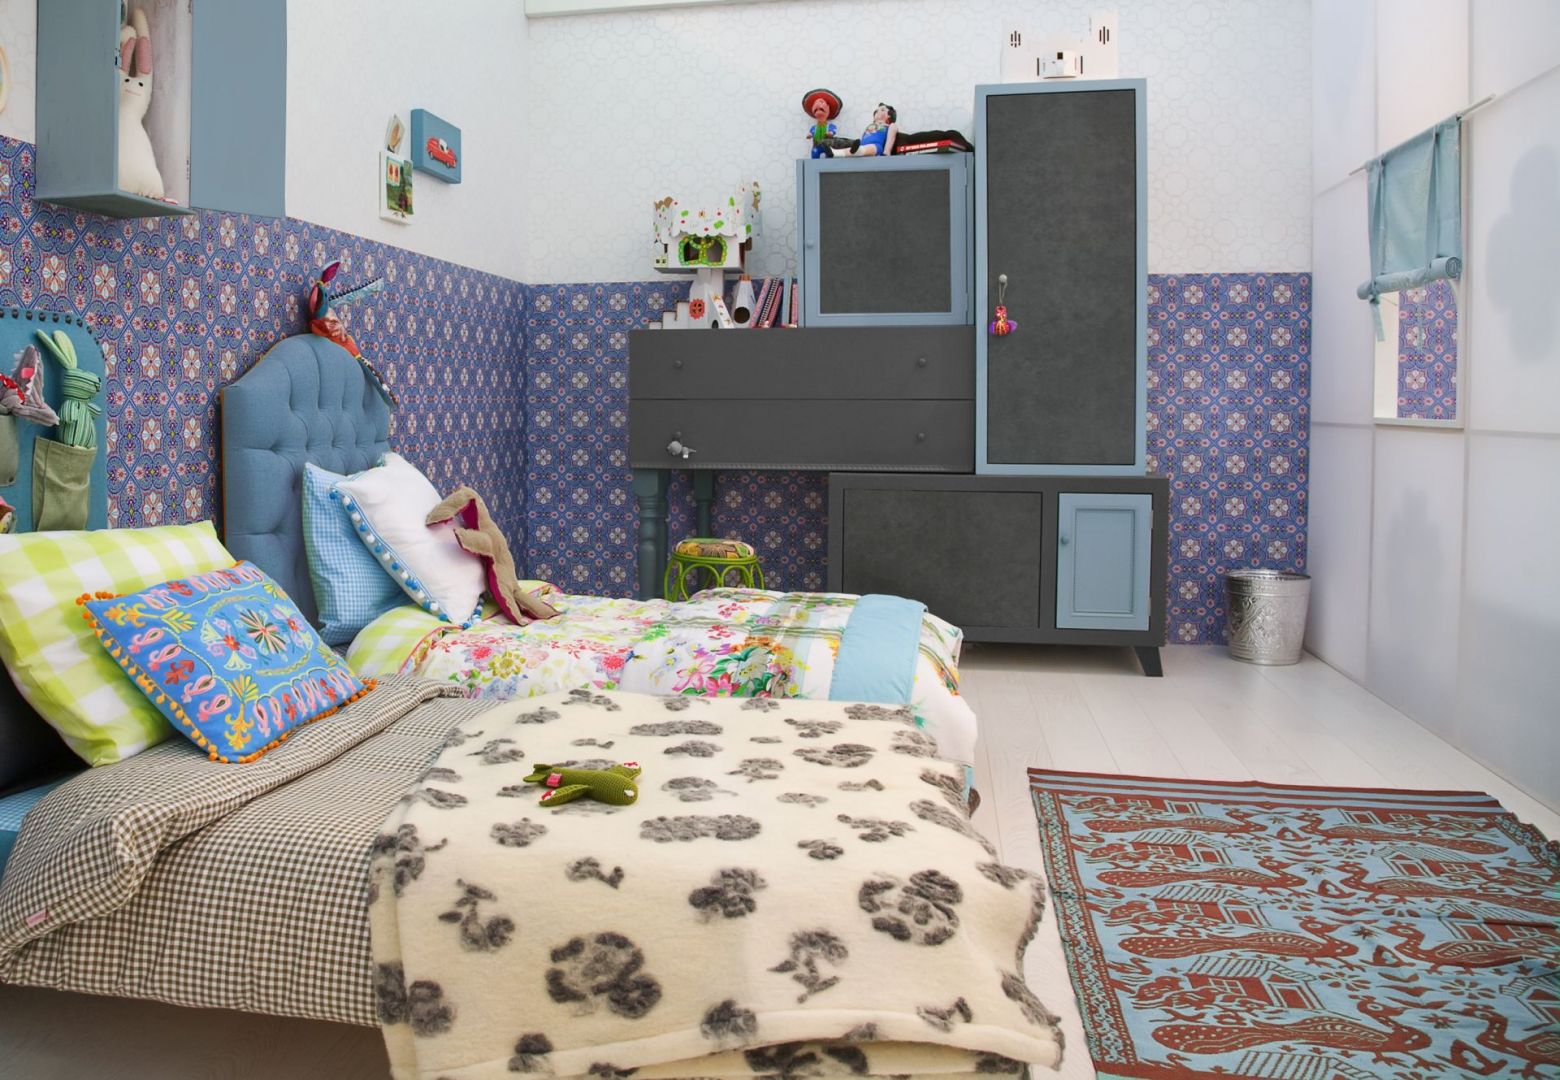 W pokoju dziecka warto zadbać o wesołą kolorystykę. Na zdjęciu dekor smooth concrete graphite F6464 oraz niebieski U1717. Fot. Pfleiderer